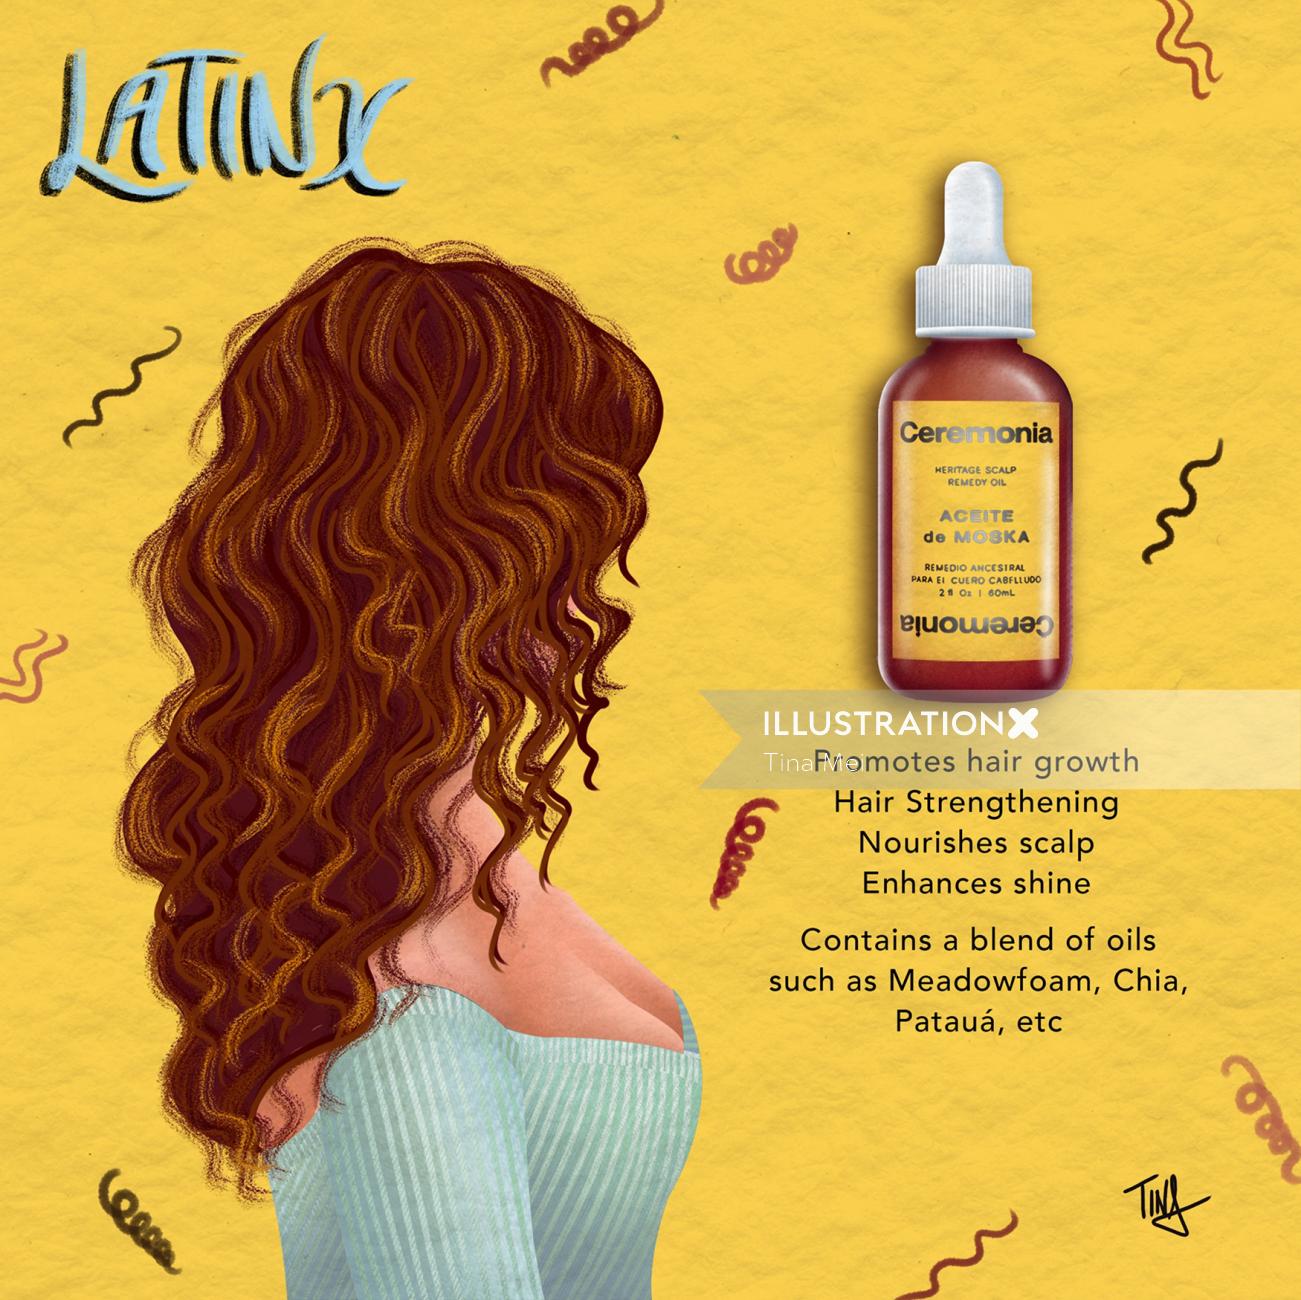 Comunidade Latinx, Cerimônia, ilustração de cabelo, ilustração de cuidados com a pele, ilustração de cabelo, tina mei i